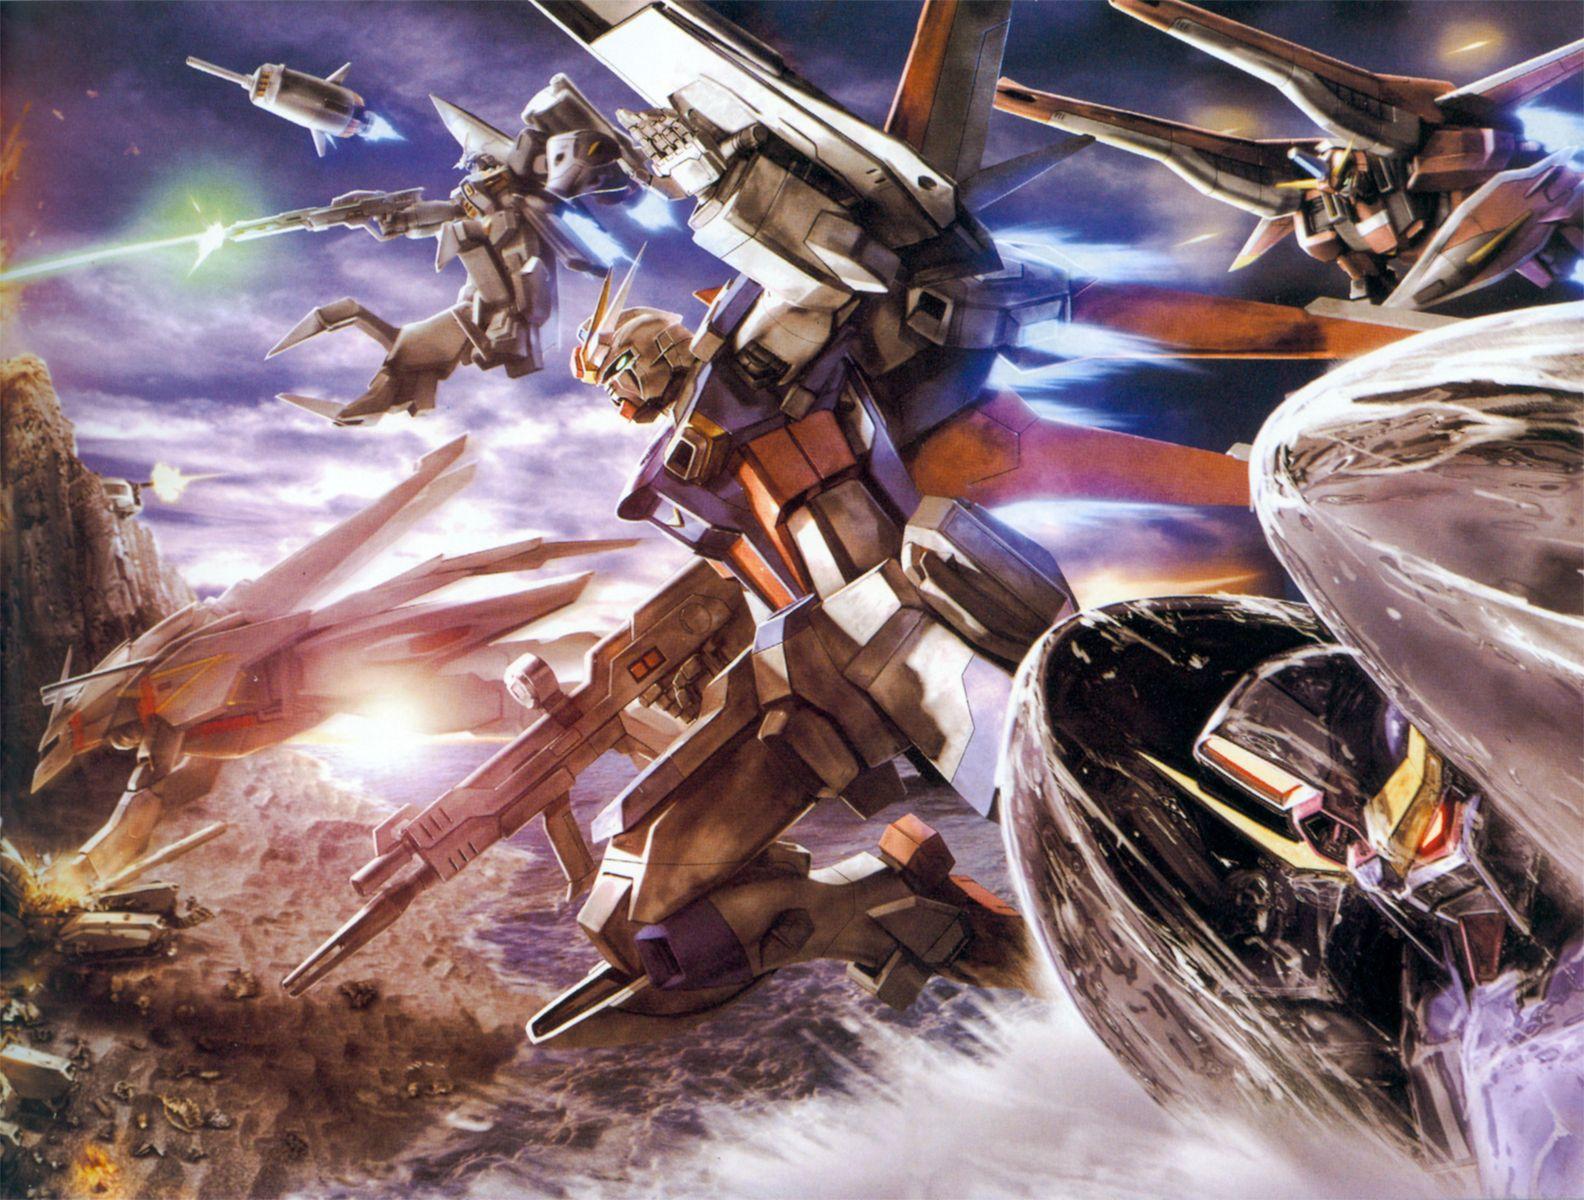 1584x1200 Tải xuống miễn phí hình nền gundam 1080p HD Hình nền Bộ sưu tập hình nền HD WALLPAPERS [1584x1200] cho Máy tính để bàn, Di động & Máy tính bảng của bạn.  Khám phá Hình nền Gundam 1080P.  Hình nền Gundam Exia, Hình nền Unicorn Gundam, Hình nền Gundam Wing